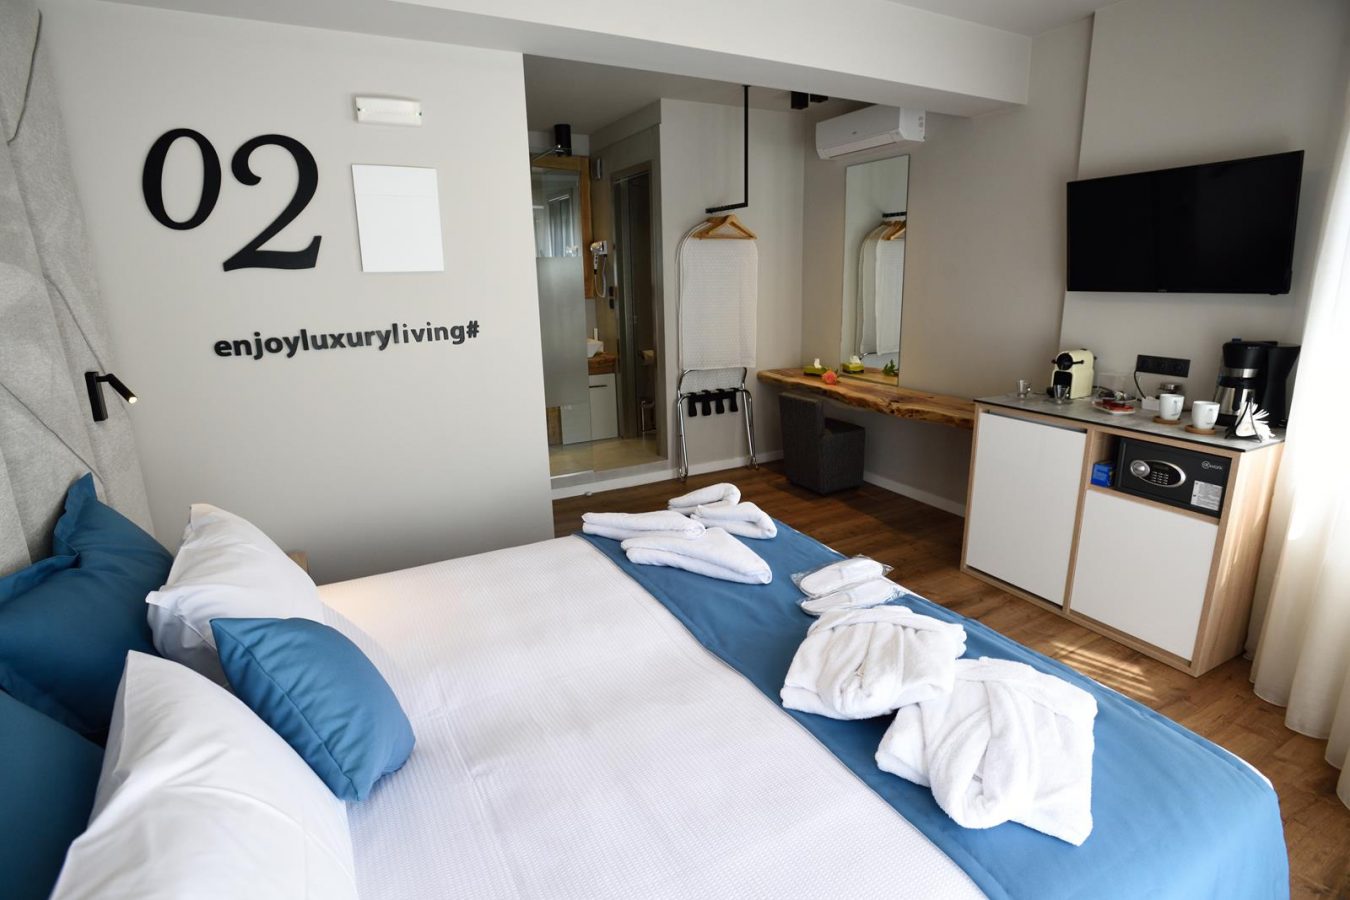 δωματια θεσσαλονικη κεντρο- magnifique luxury suites